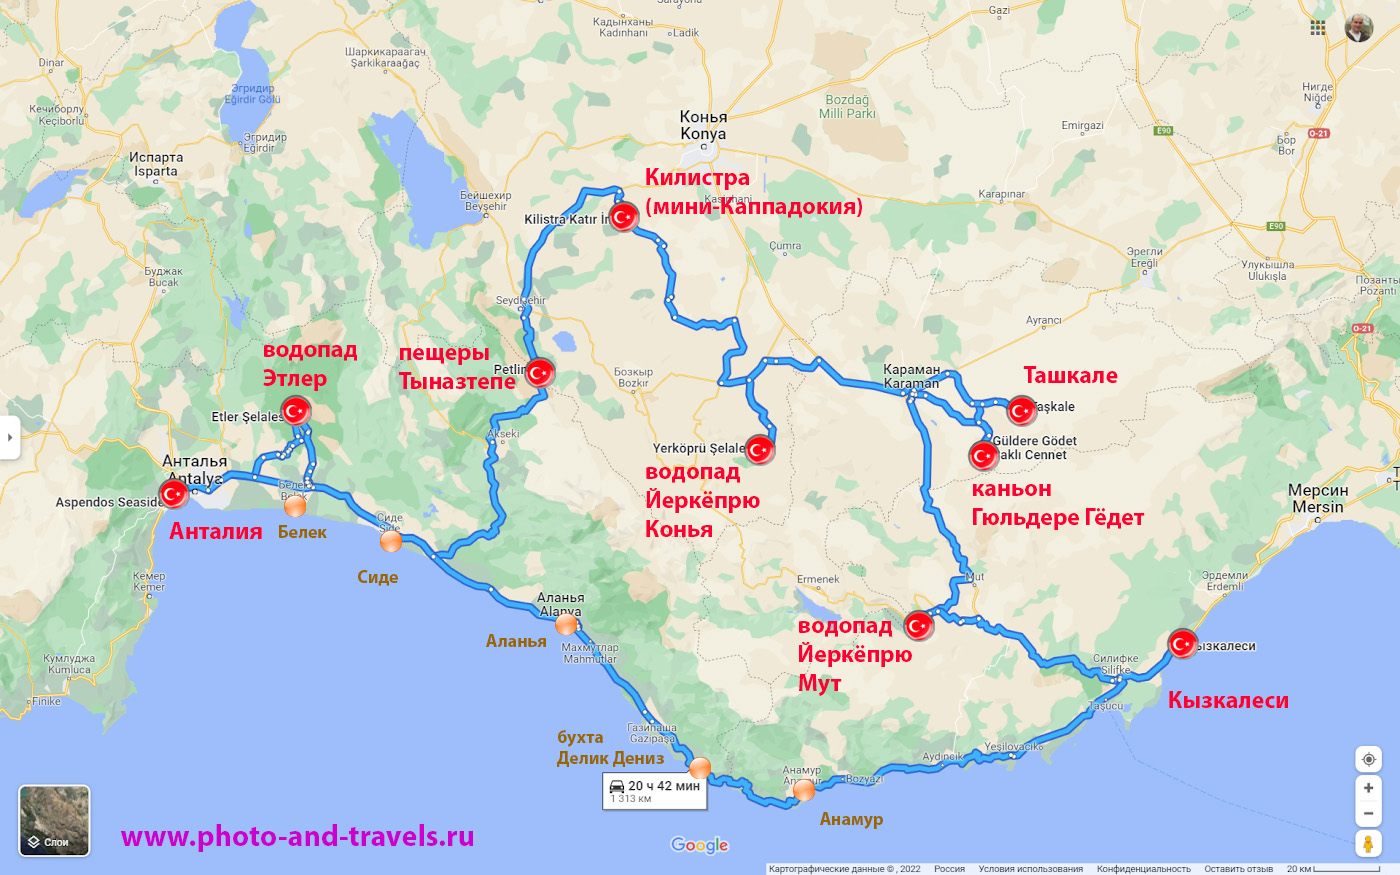 37. Карта маршрута путешествия с маленькими детьми к востоку от Анталии и Алании.